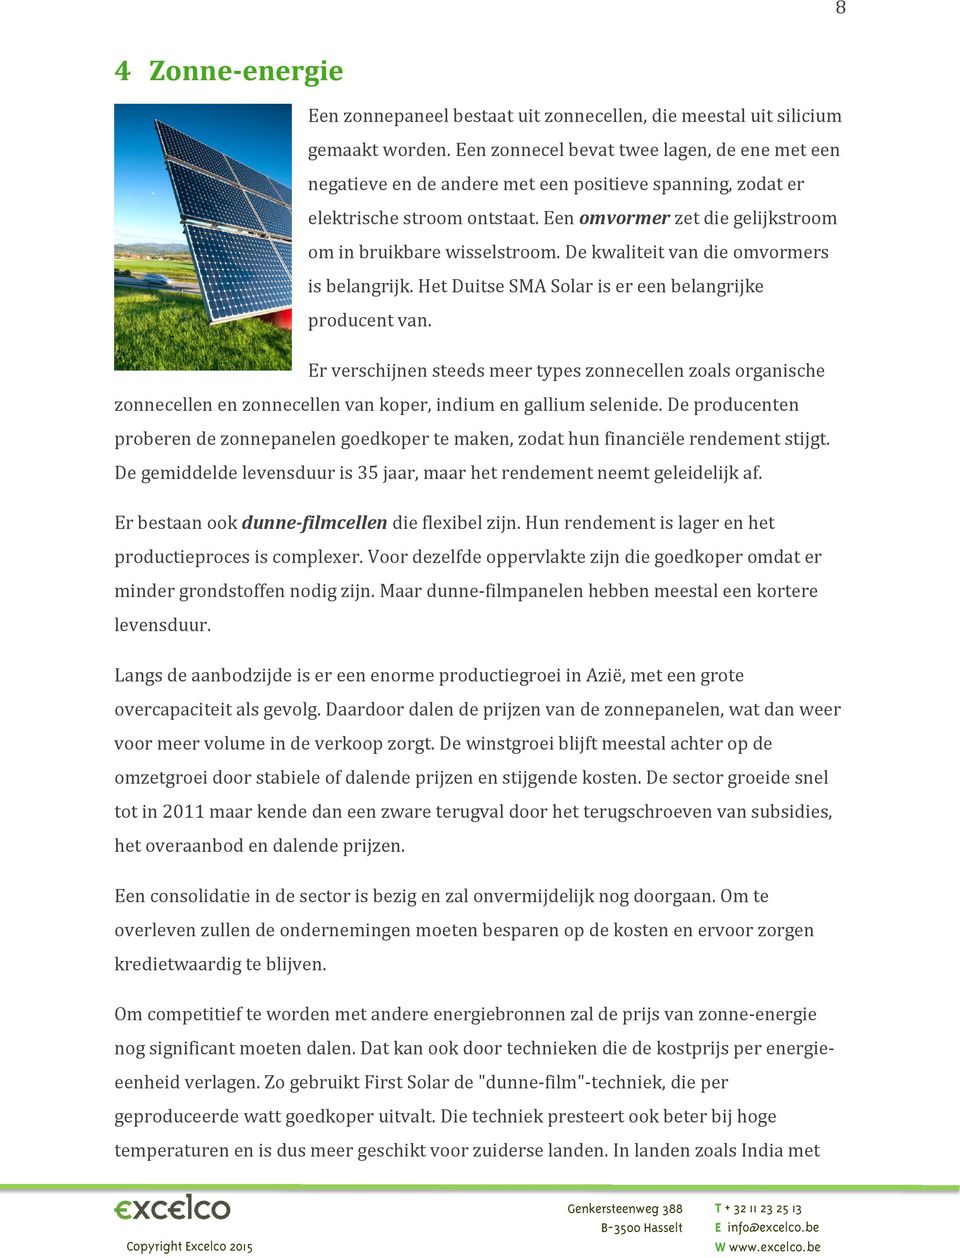 De kwaliteit van die omvormers is belangrijk. Het Duitse SMA Solar is er een belangrijke producent van.